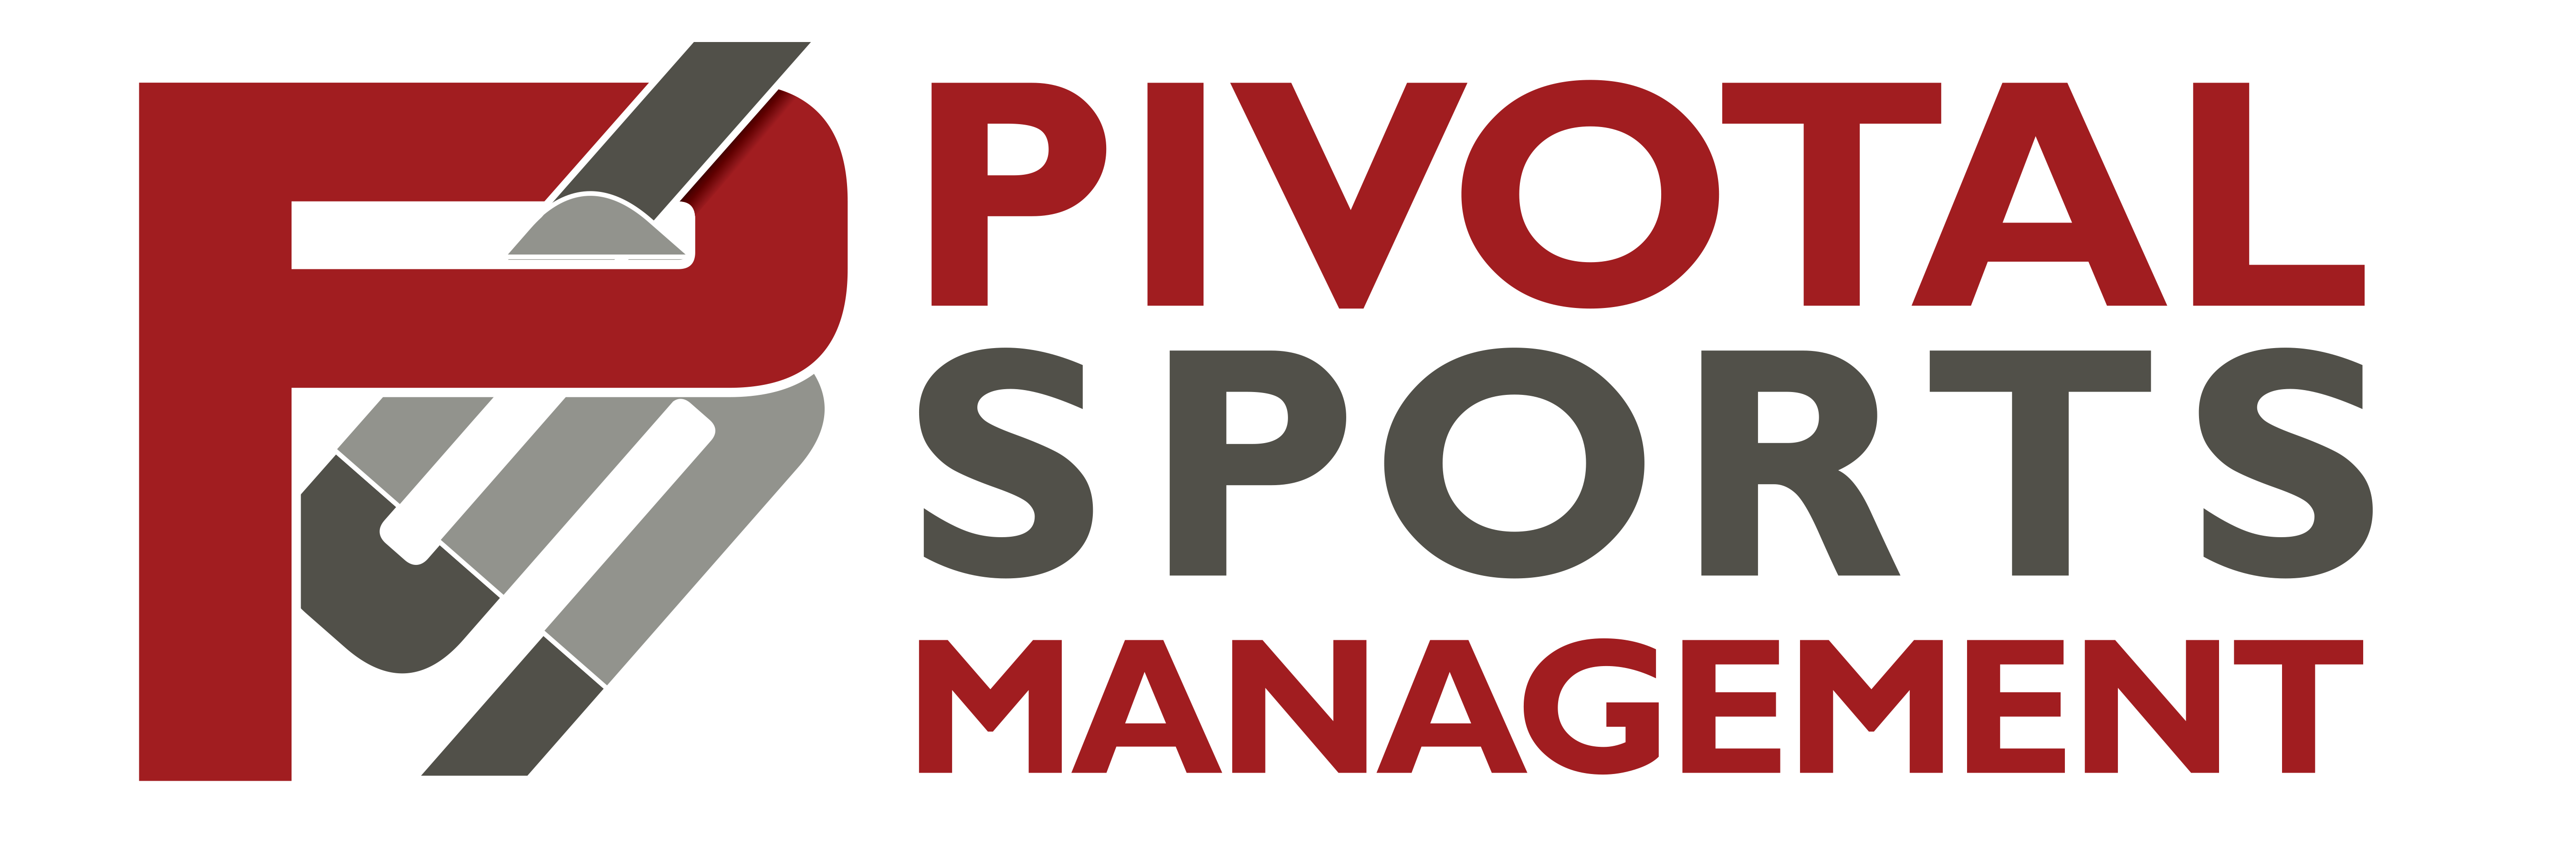 pivotal_sports_logo